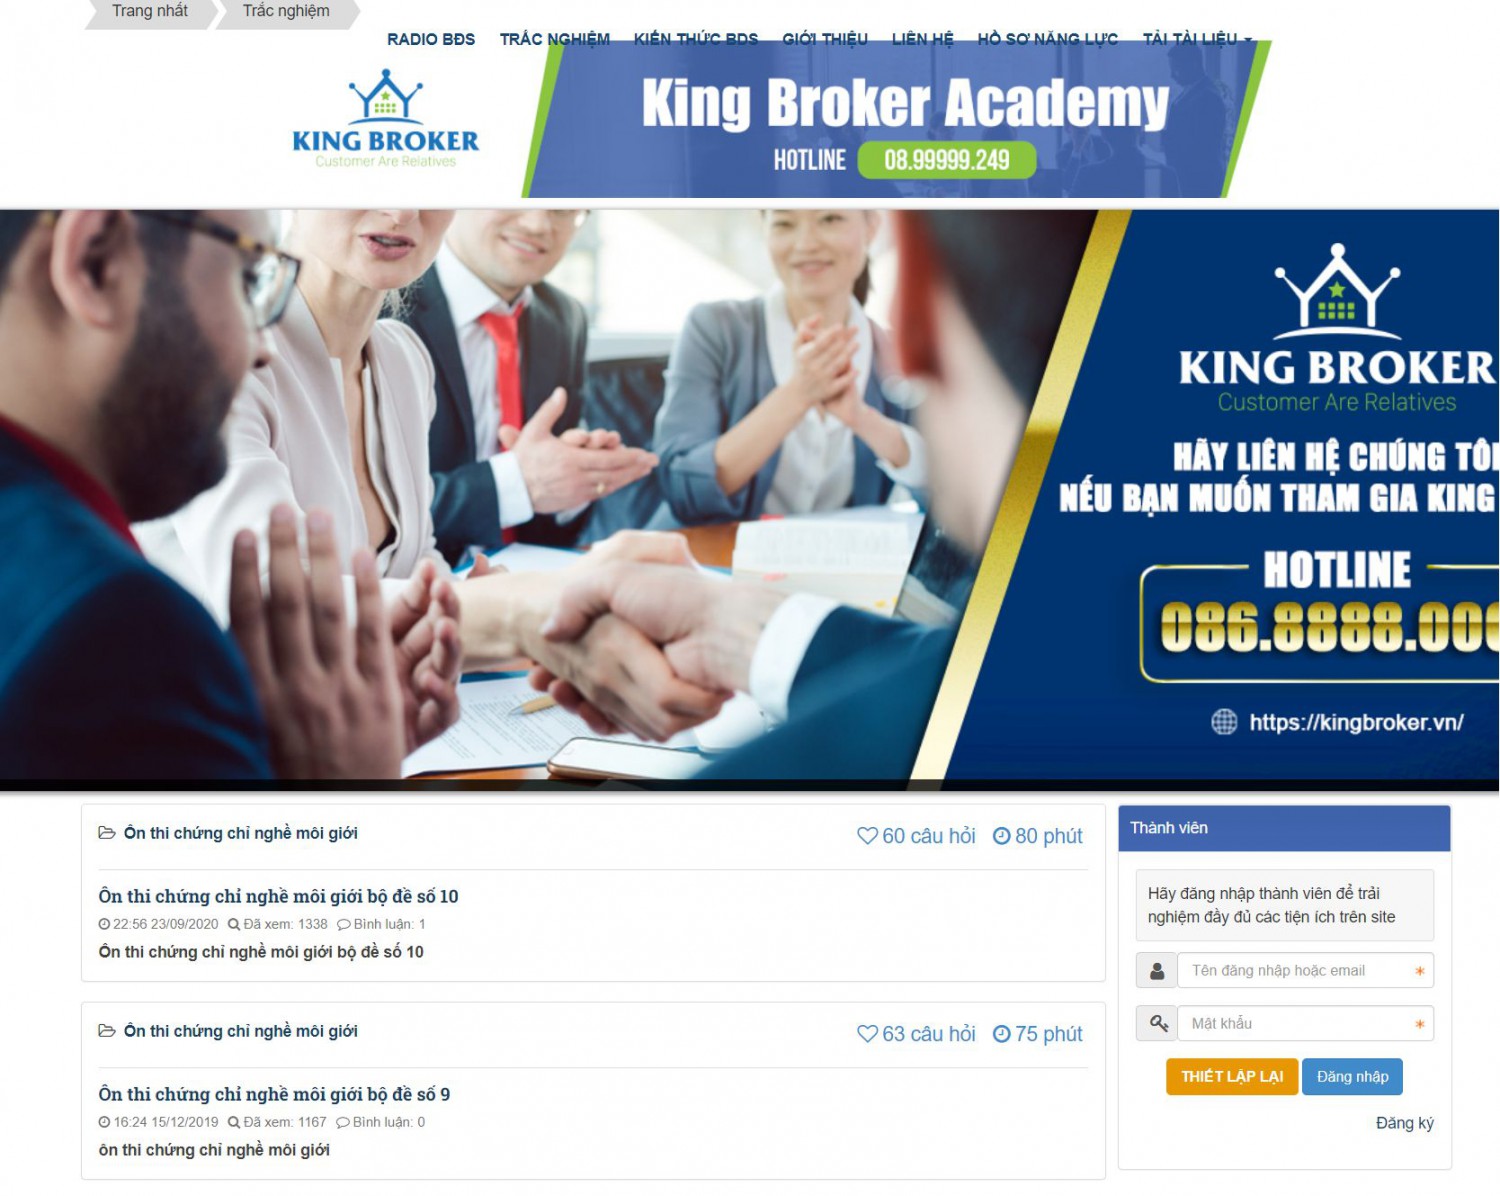 King Broker Acamedy giao diện website thi trắc nghiệm đẹp nhất